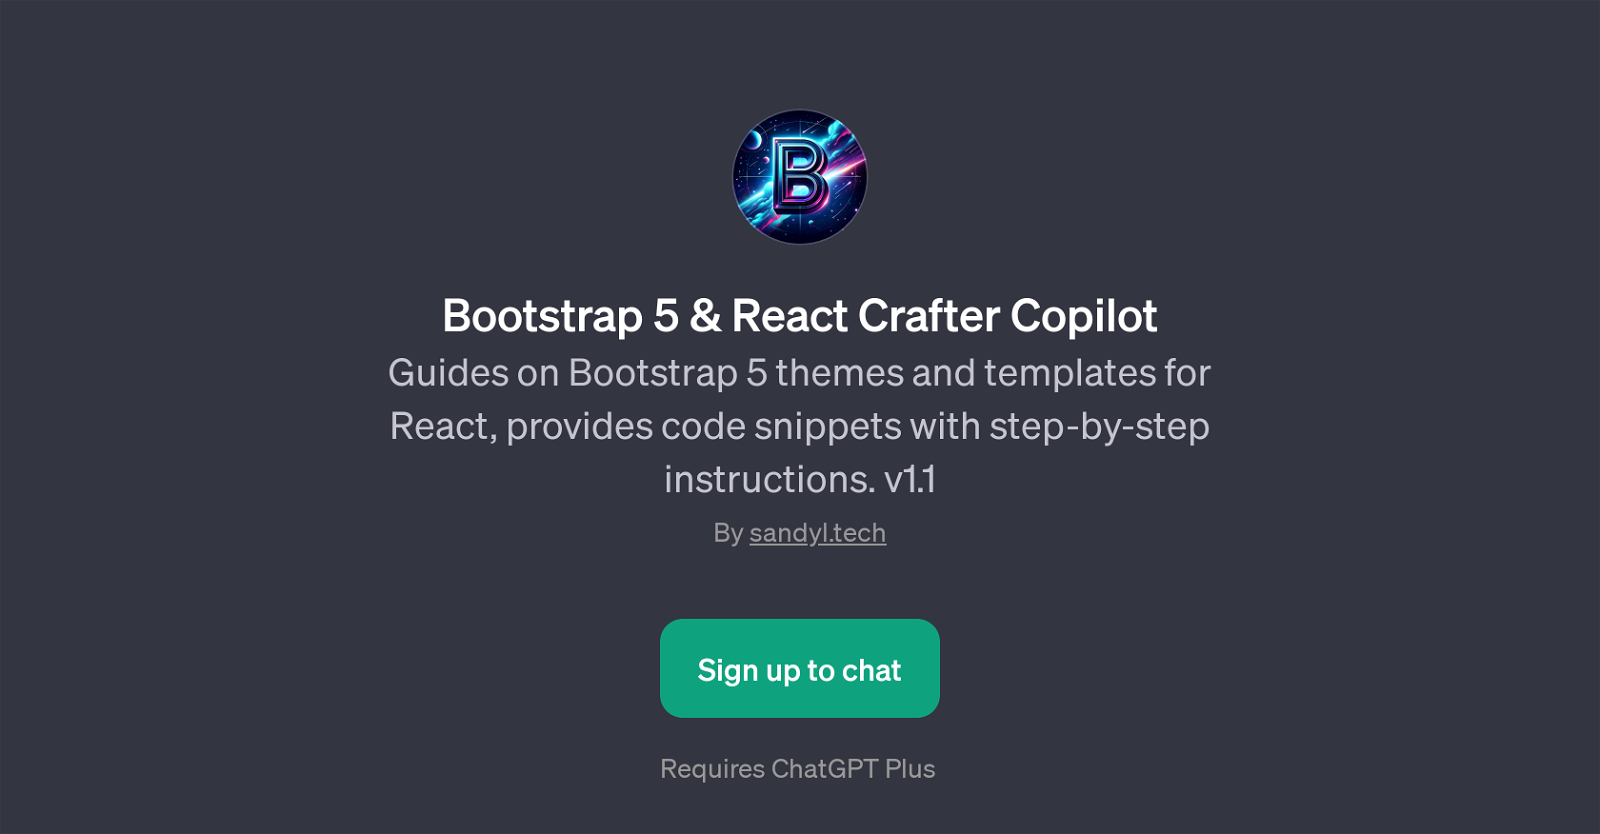 Bootstrap 5 & React Crafter Copilot website